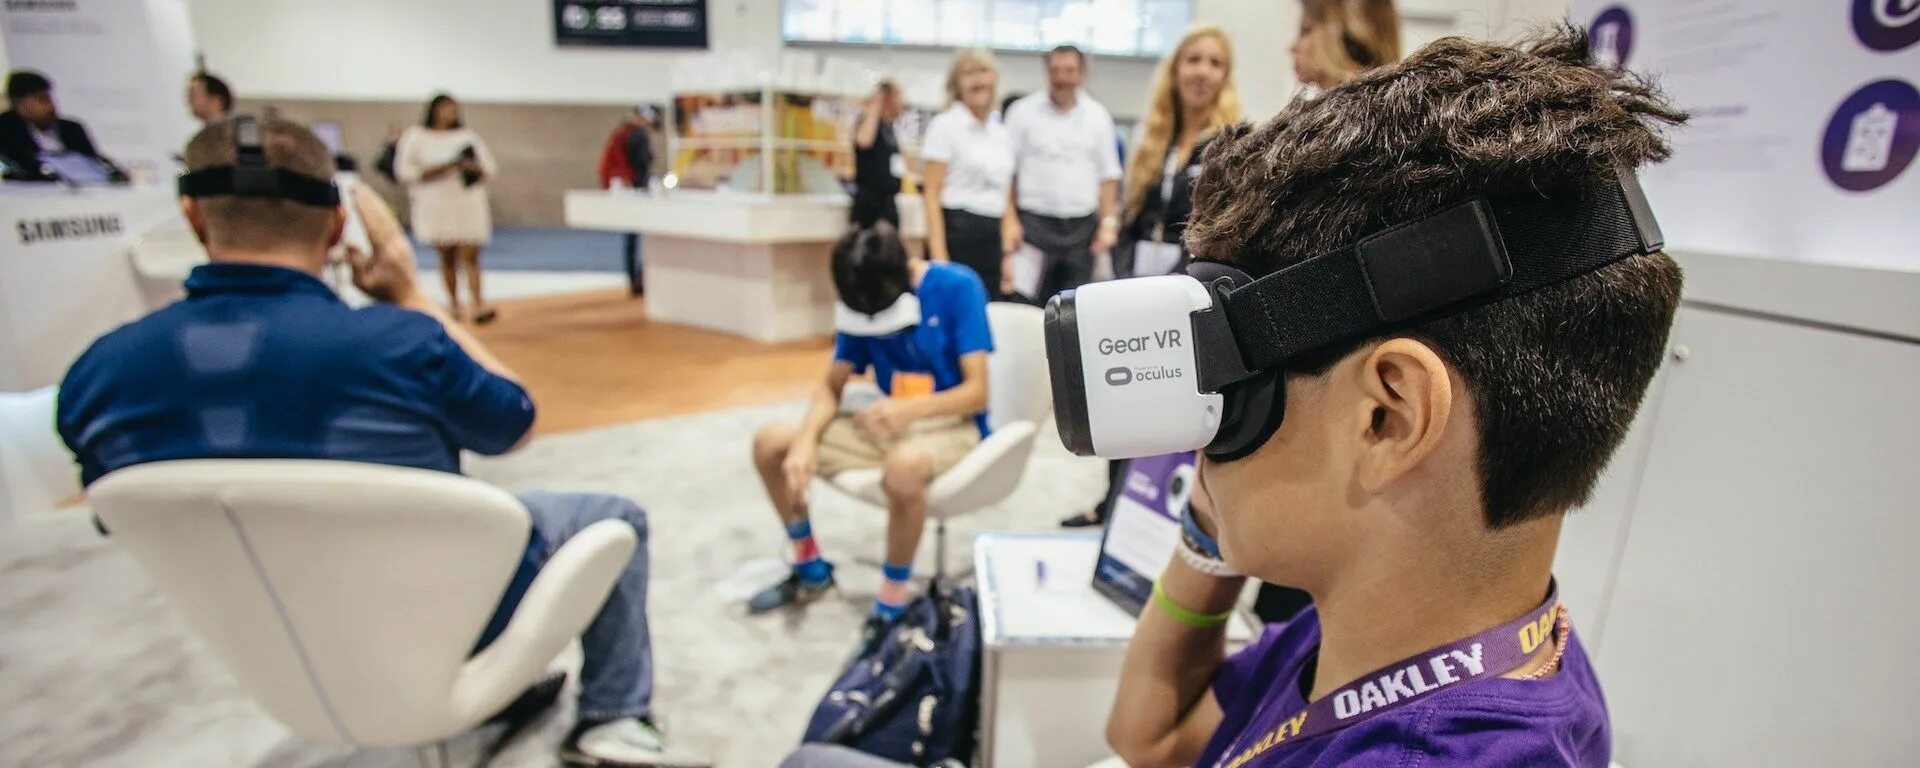 Vr класс. Класс виртуальной реальности. Виртуальная реальность в школе. VR В образовании. Виртуальная реальность в образовании класс.